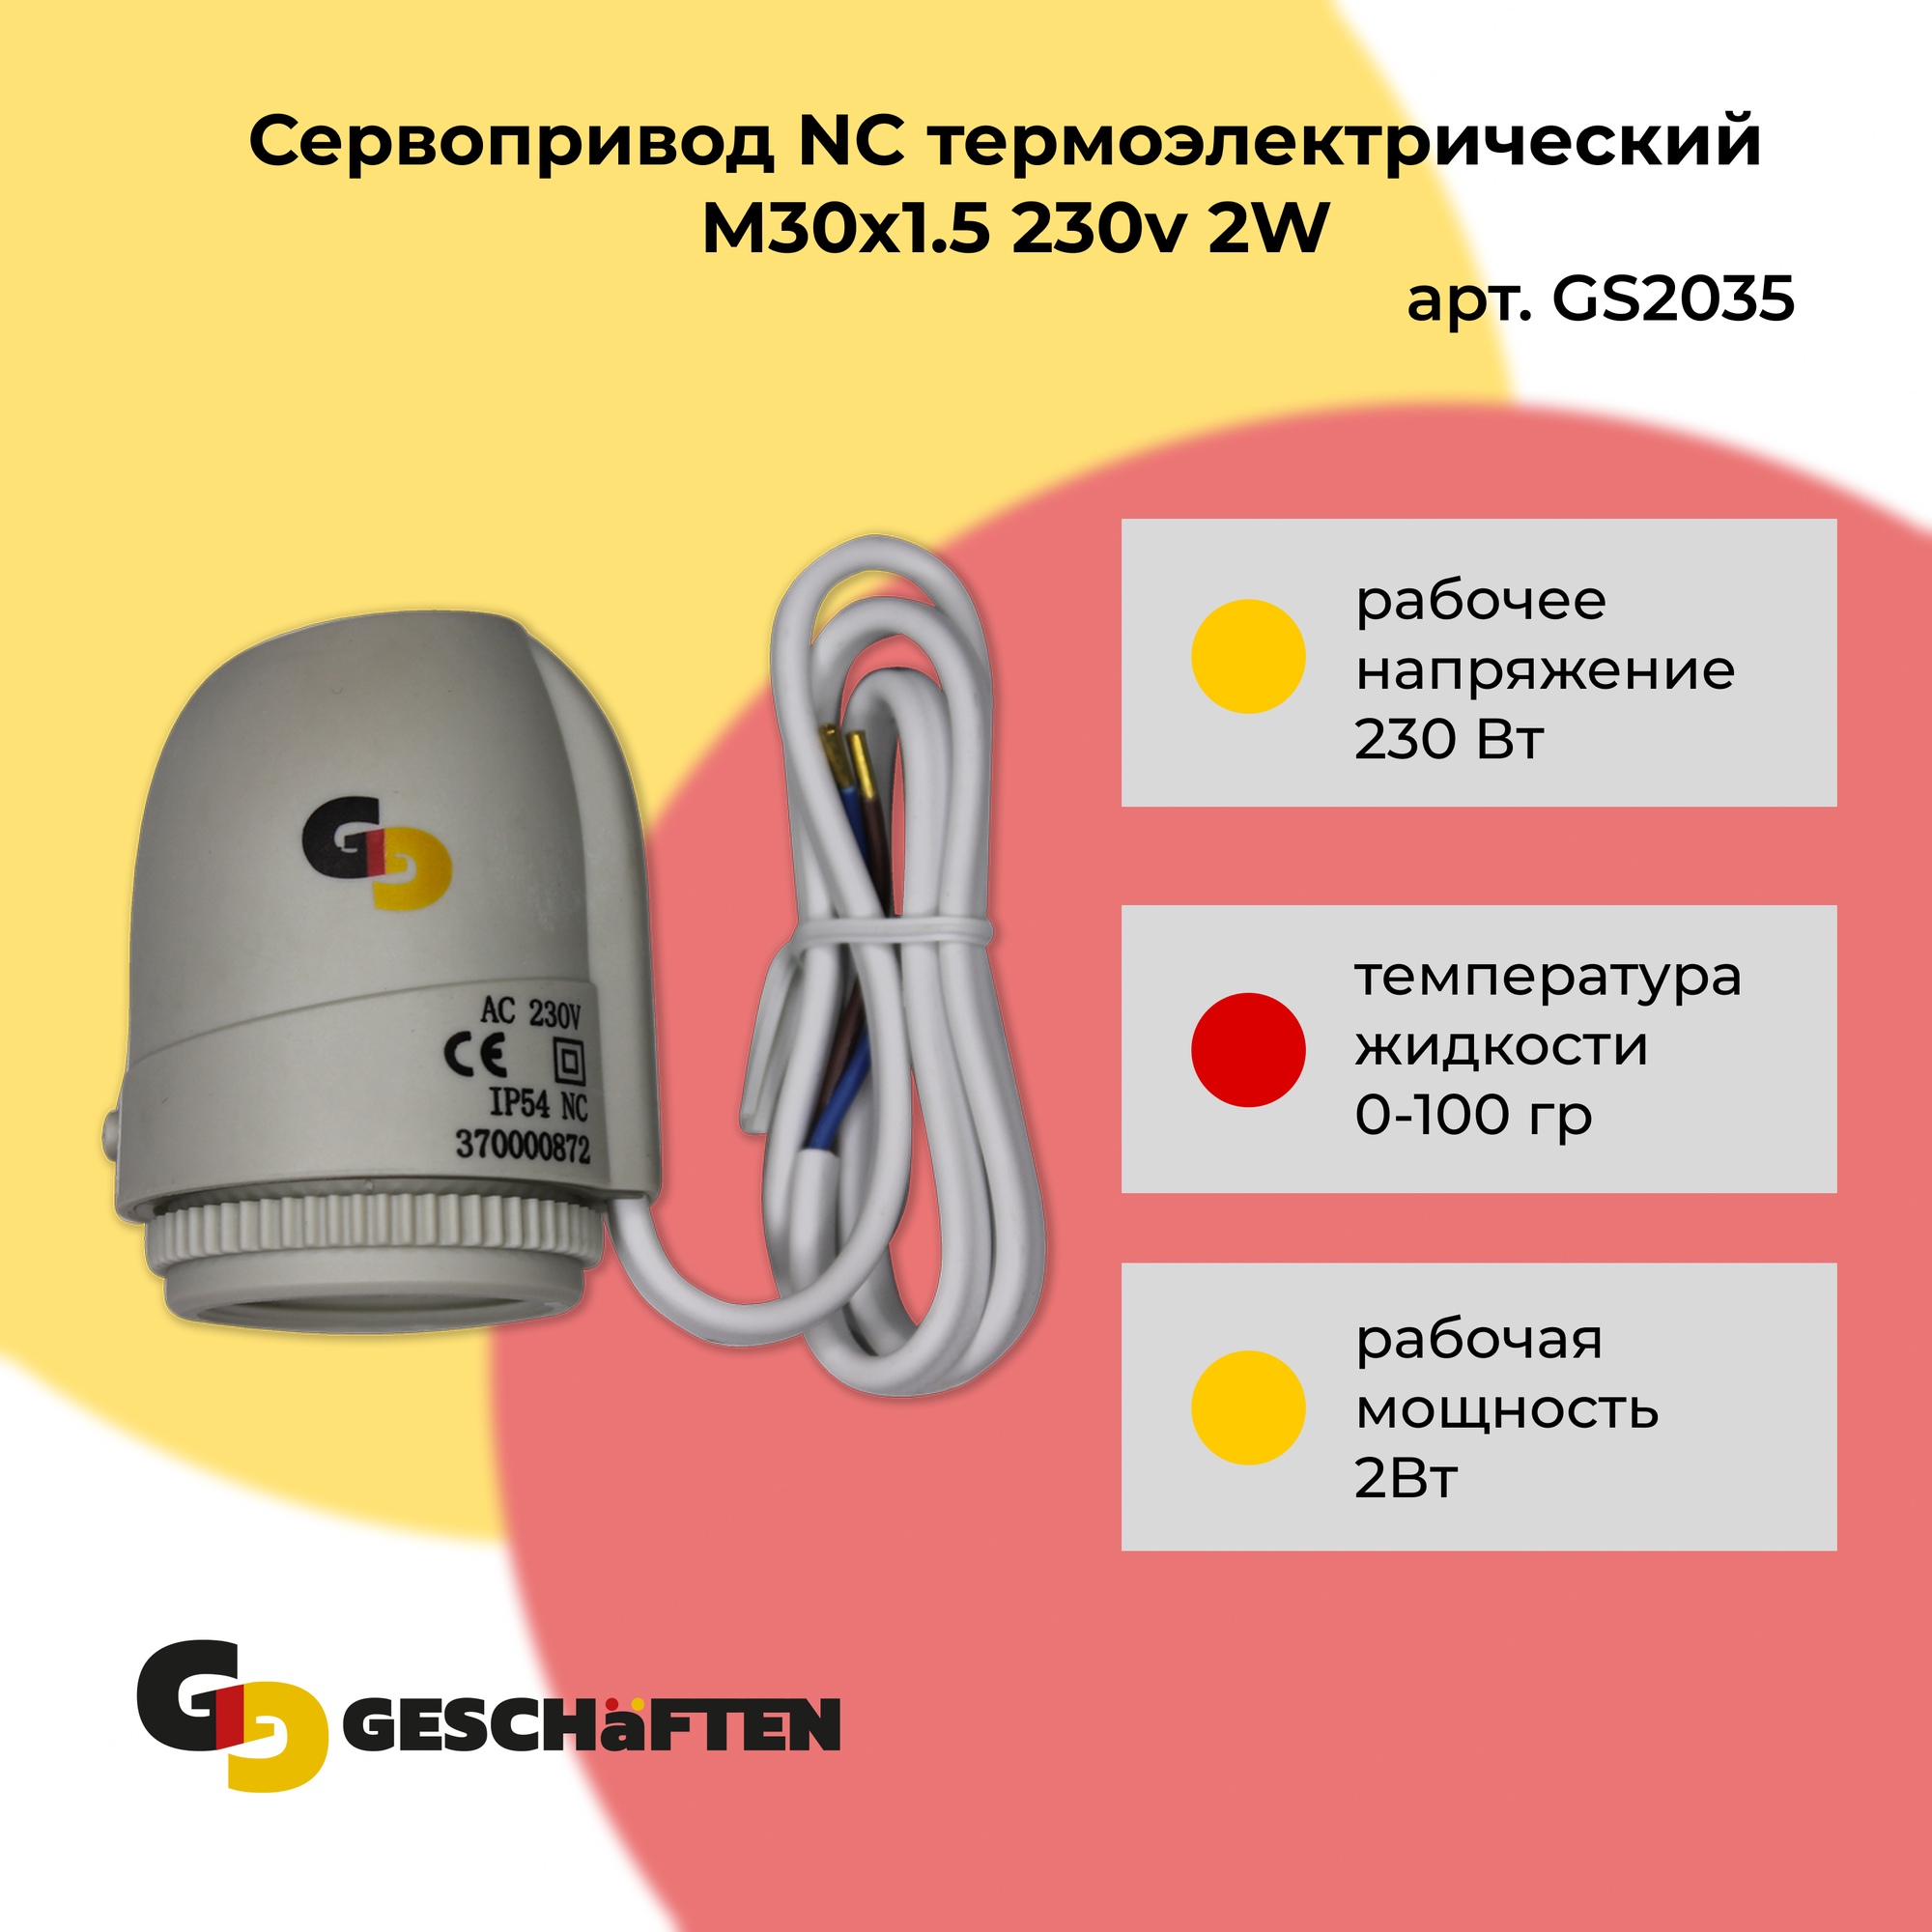 Сервопривод NC термоэлектрический M30x1.5 230v 2W